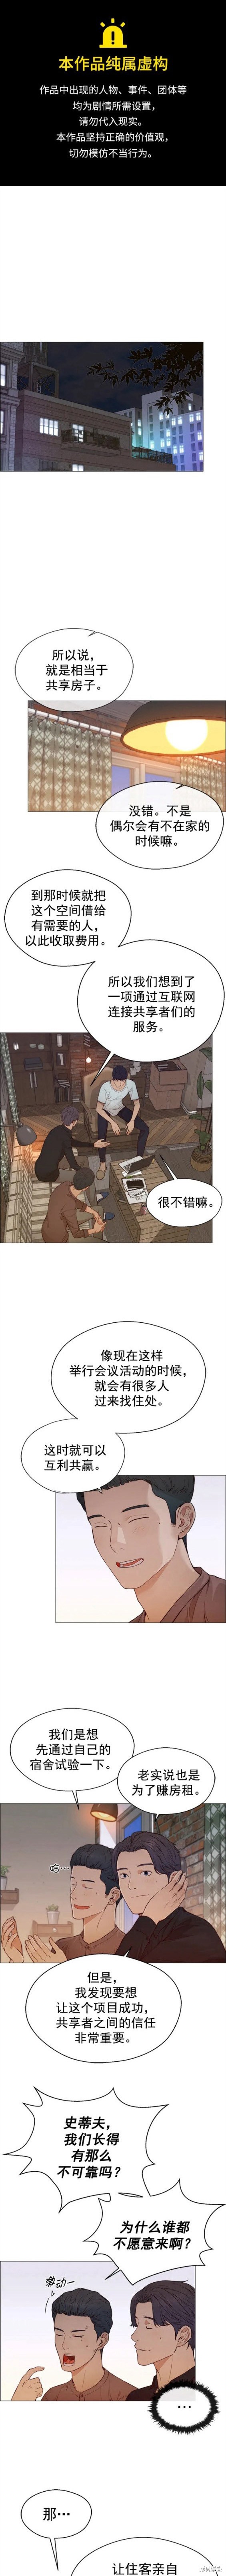 男子汉漫画,第131话1图